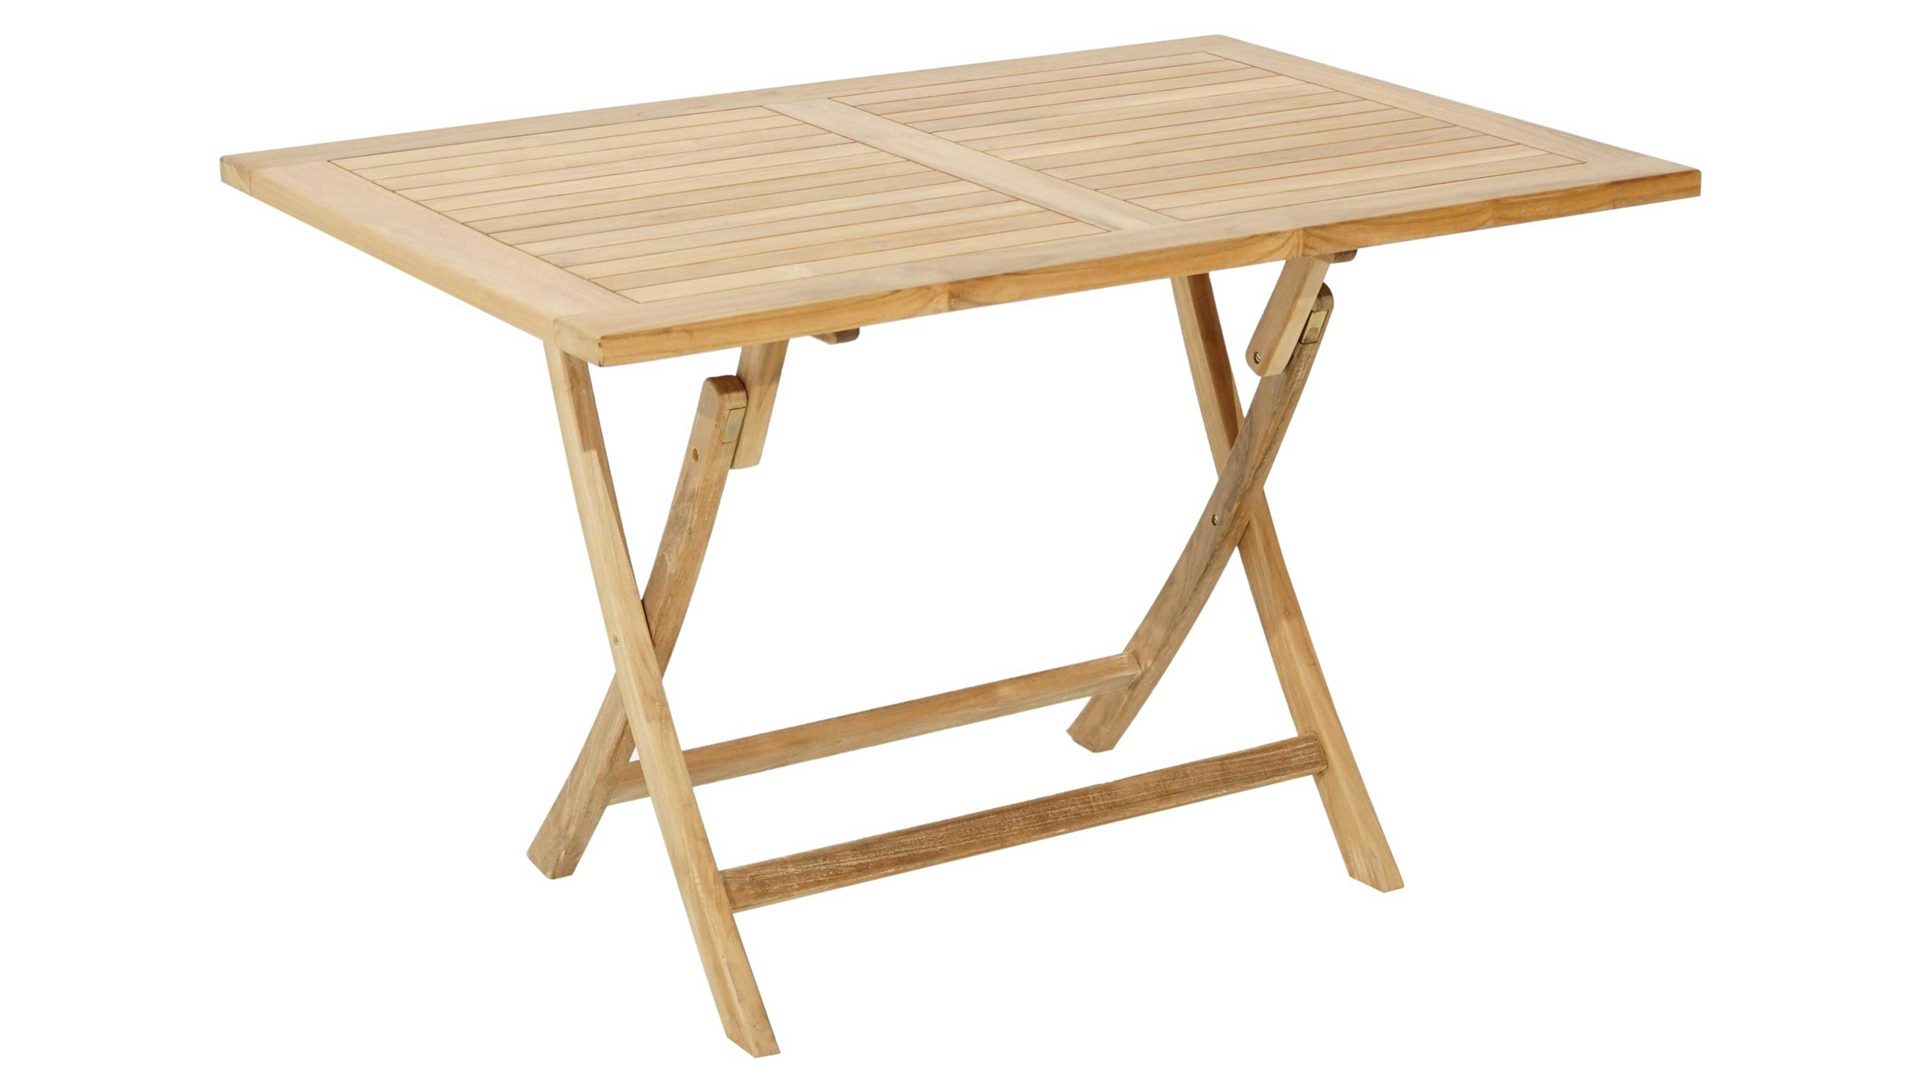 Gartentisch Ploß aus Holz in Holzfarben Ploß® Klapptisch York als Gartenmöbel honigfarbenes Teakholz – ca. 100 x 60 cm